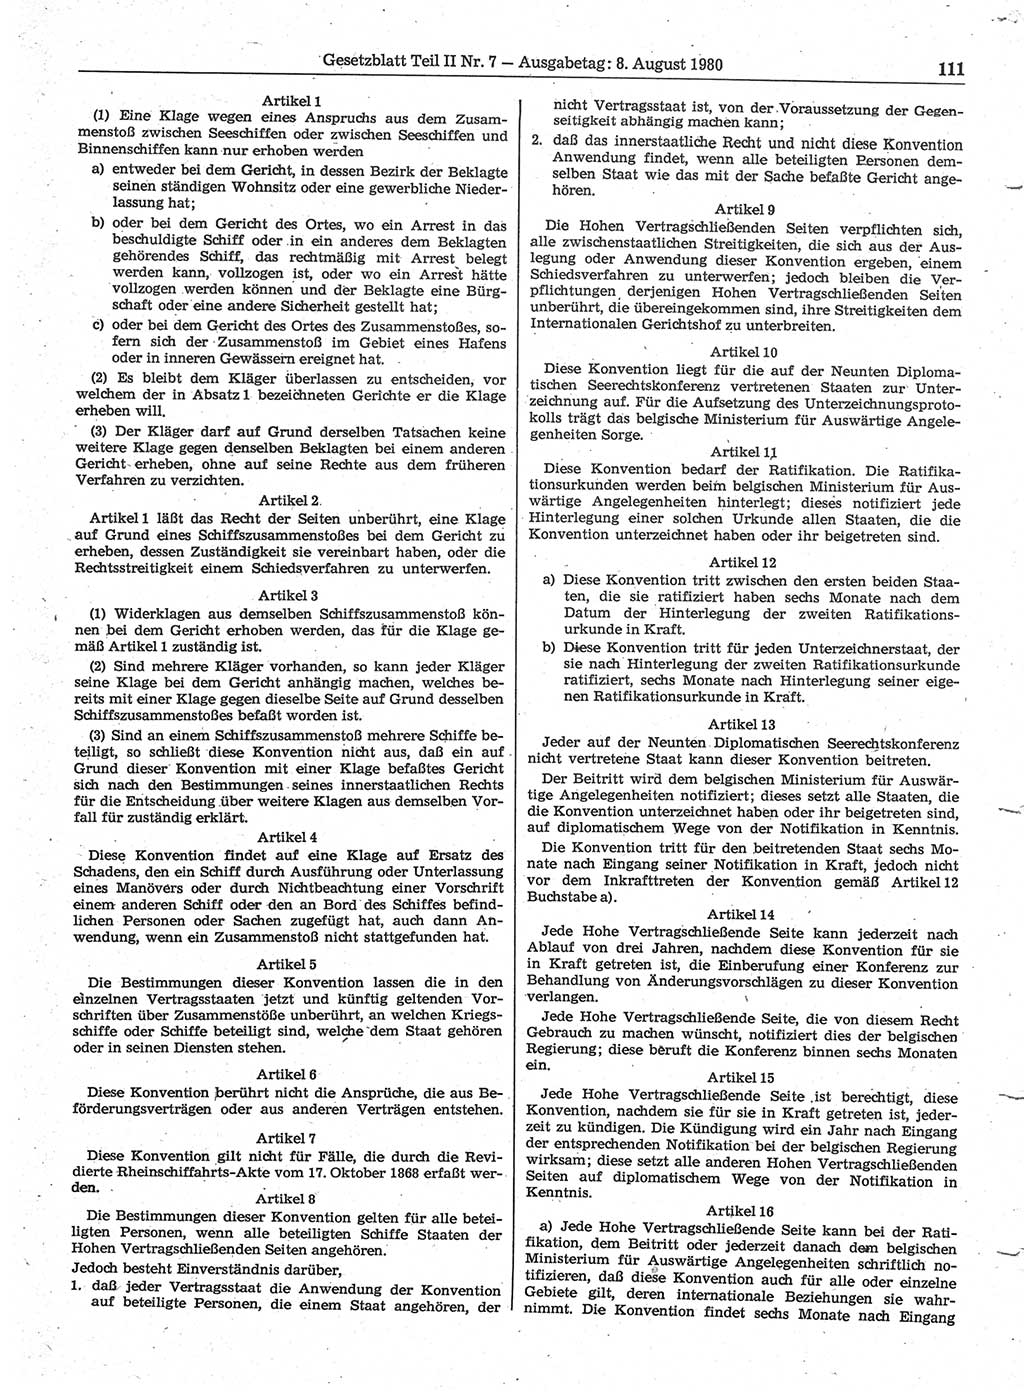 Gesetzblatt (GBl.) der Deutschen Demokratischen Republik (DDR) Teil ⅠⅠ 1980, Seite 111 (GBl. DDR ⅠⅠ 1980, S. 111)